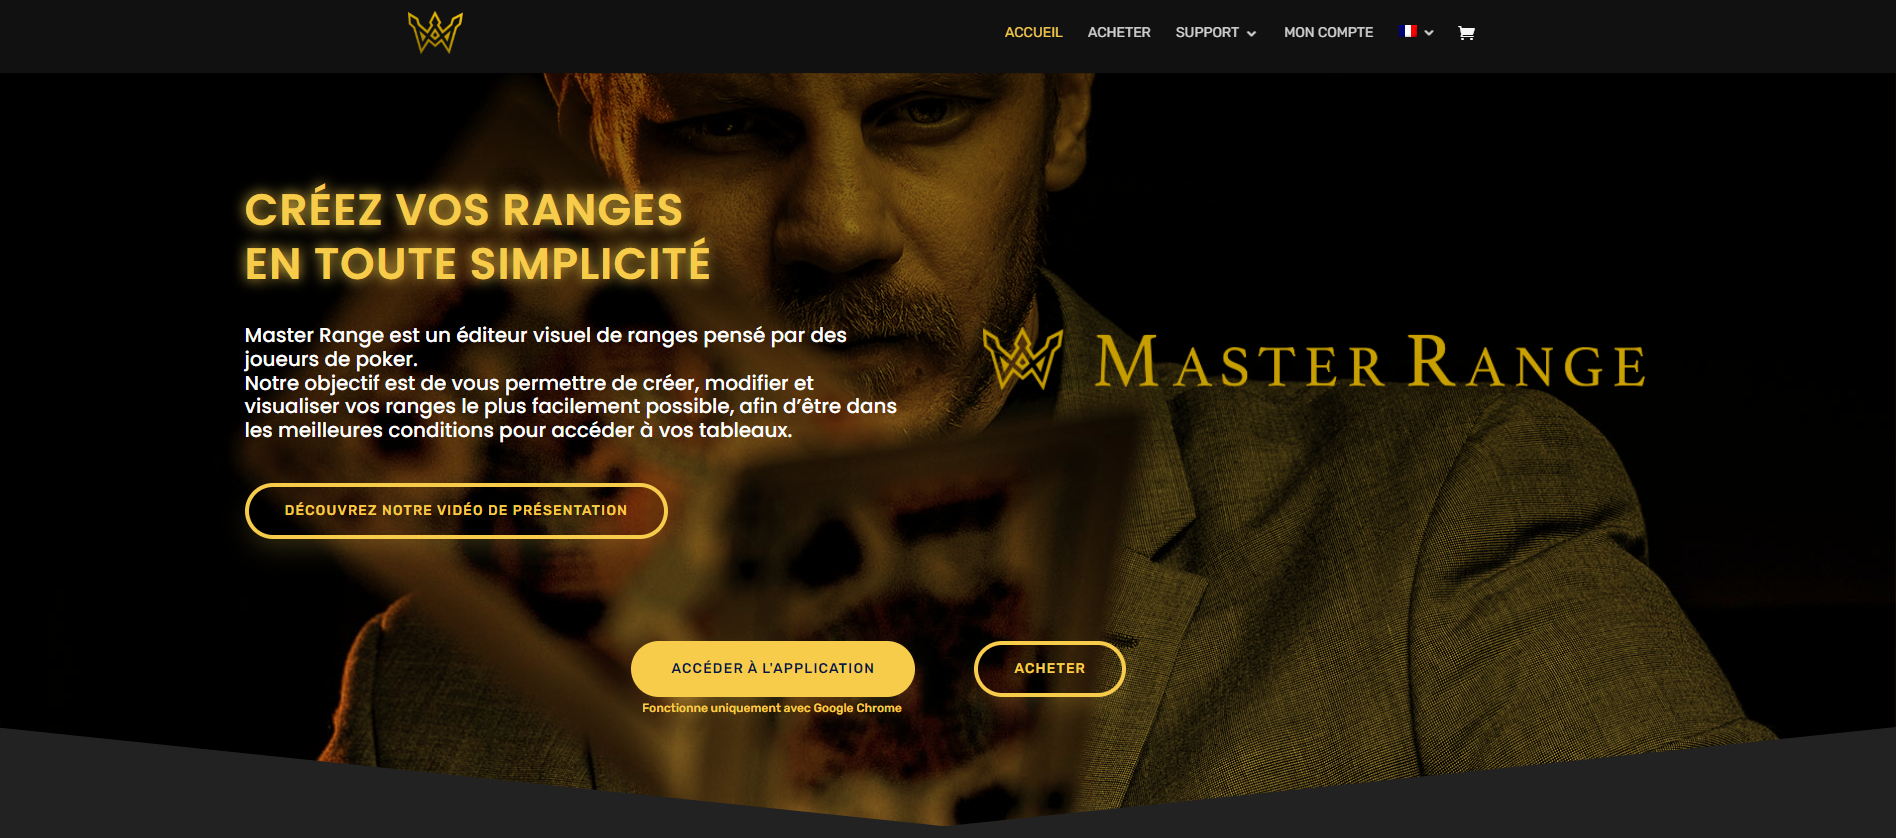 Master Range, nouveau logiciel d'édition de ranges